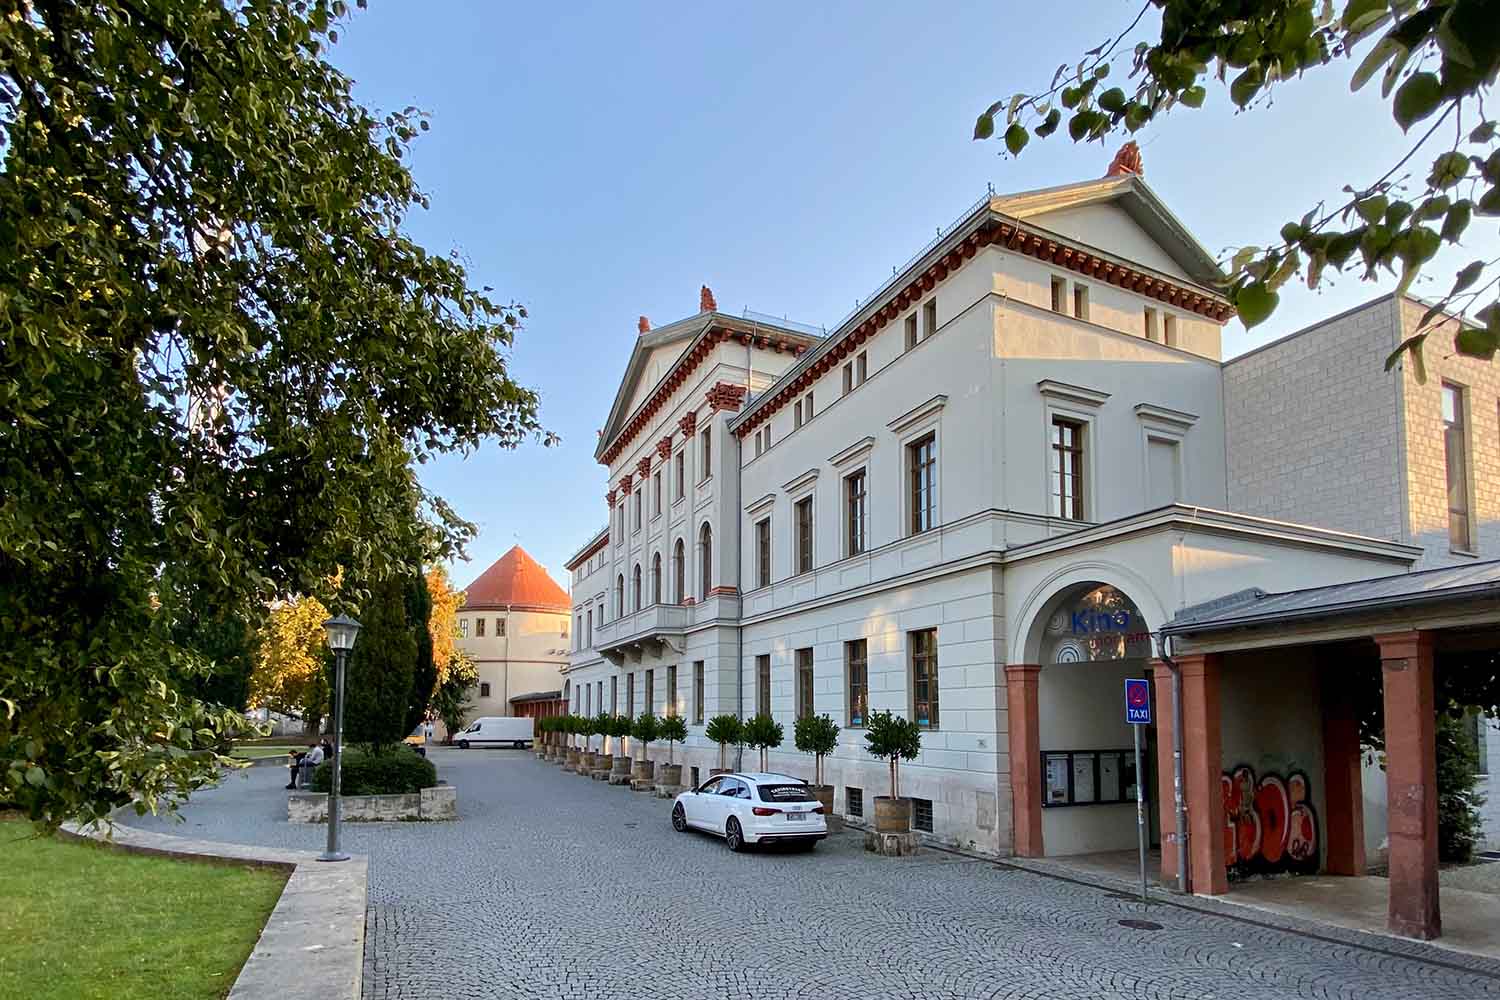 Exterior view of Monami Weimar